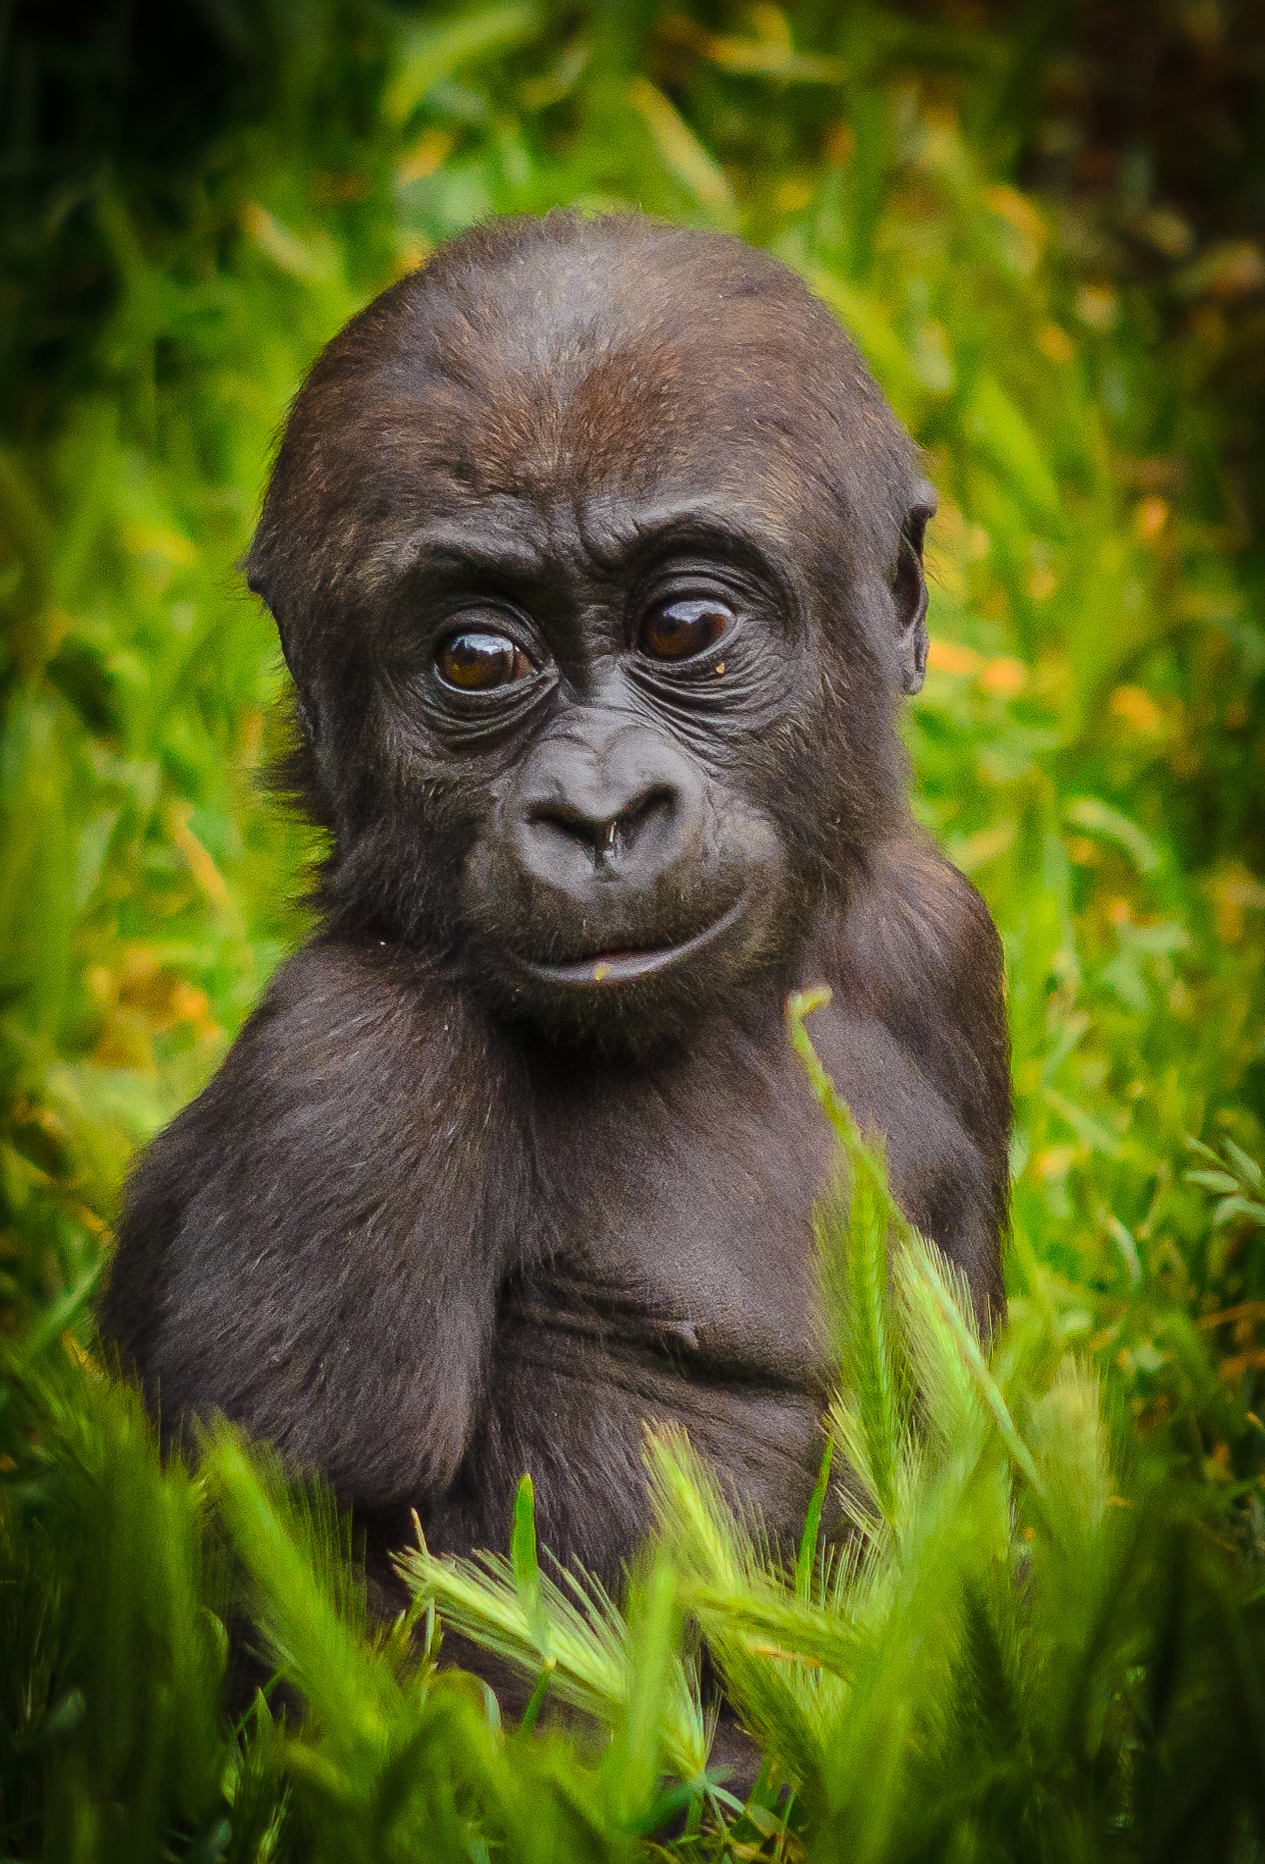 Kanzi the baby gorilla